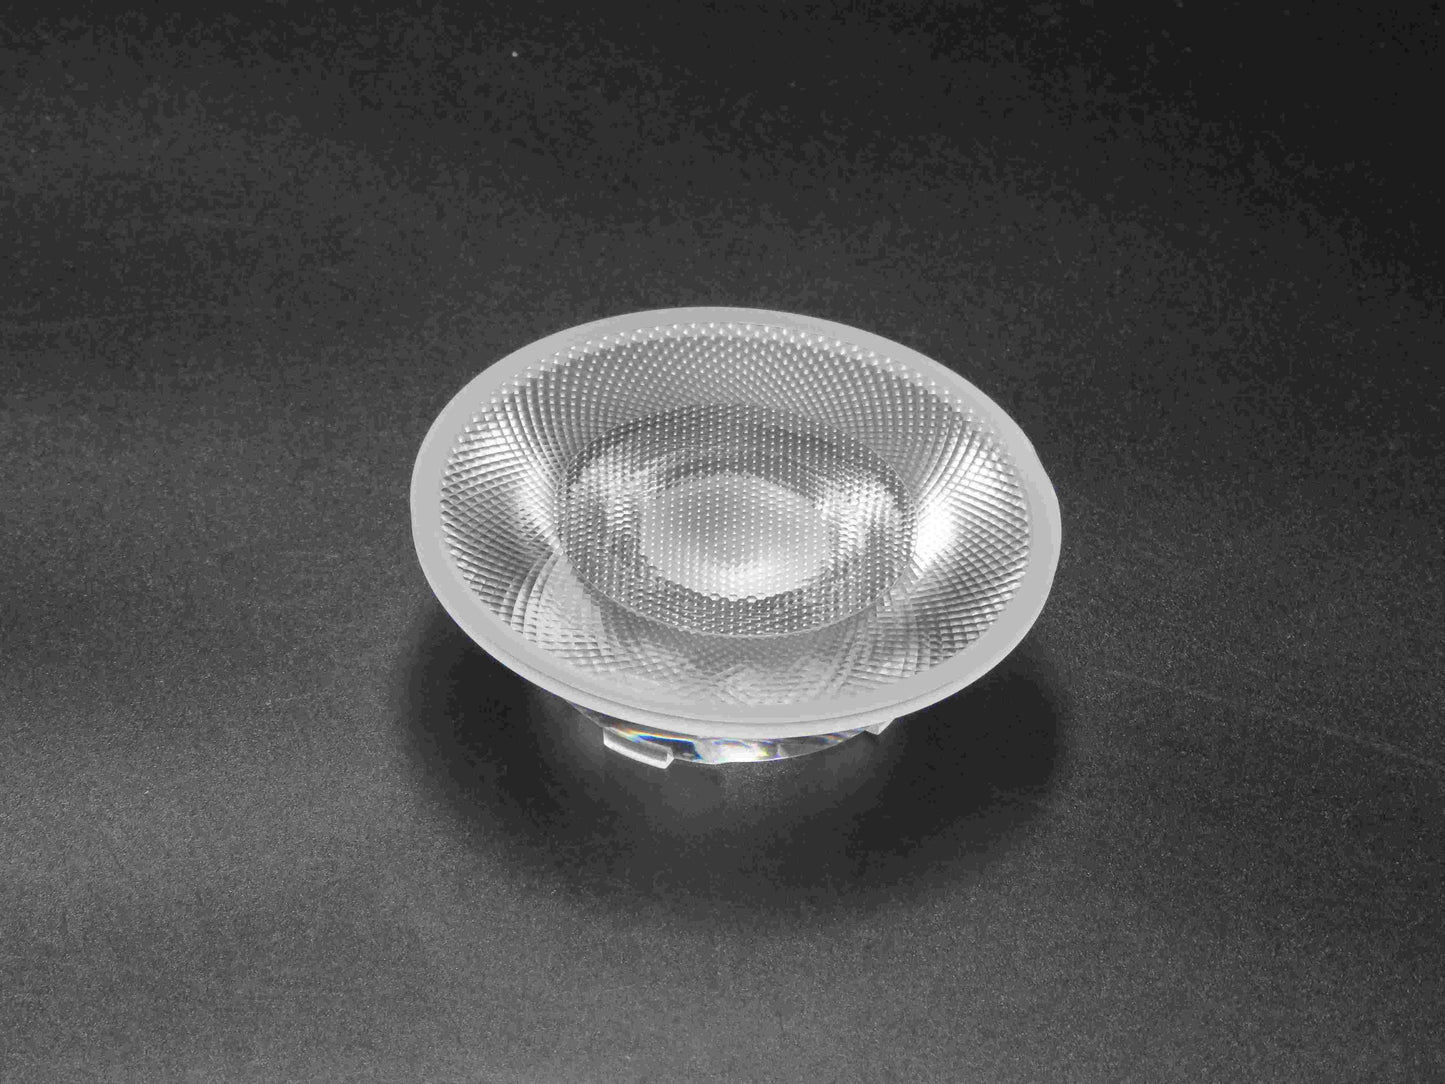 الشركة المصنعة 75MM Fresnel Lens عدسات LED الضوئية عدسات LED التجارية للبيع بالتجزئة في الأماكن المغلقة فائقة الرقة